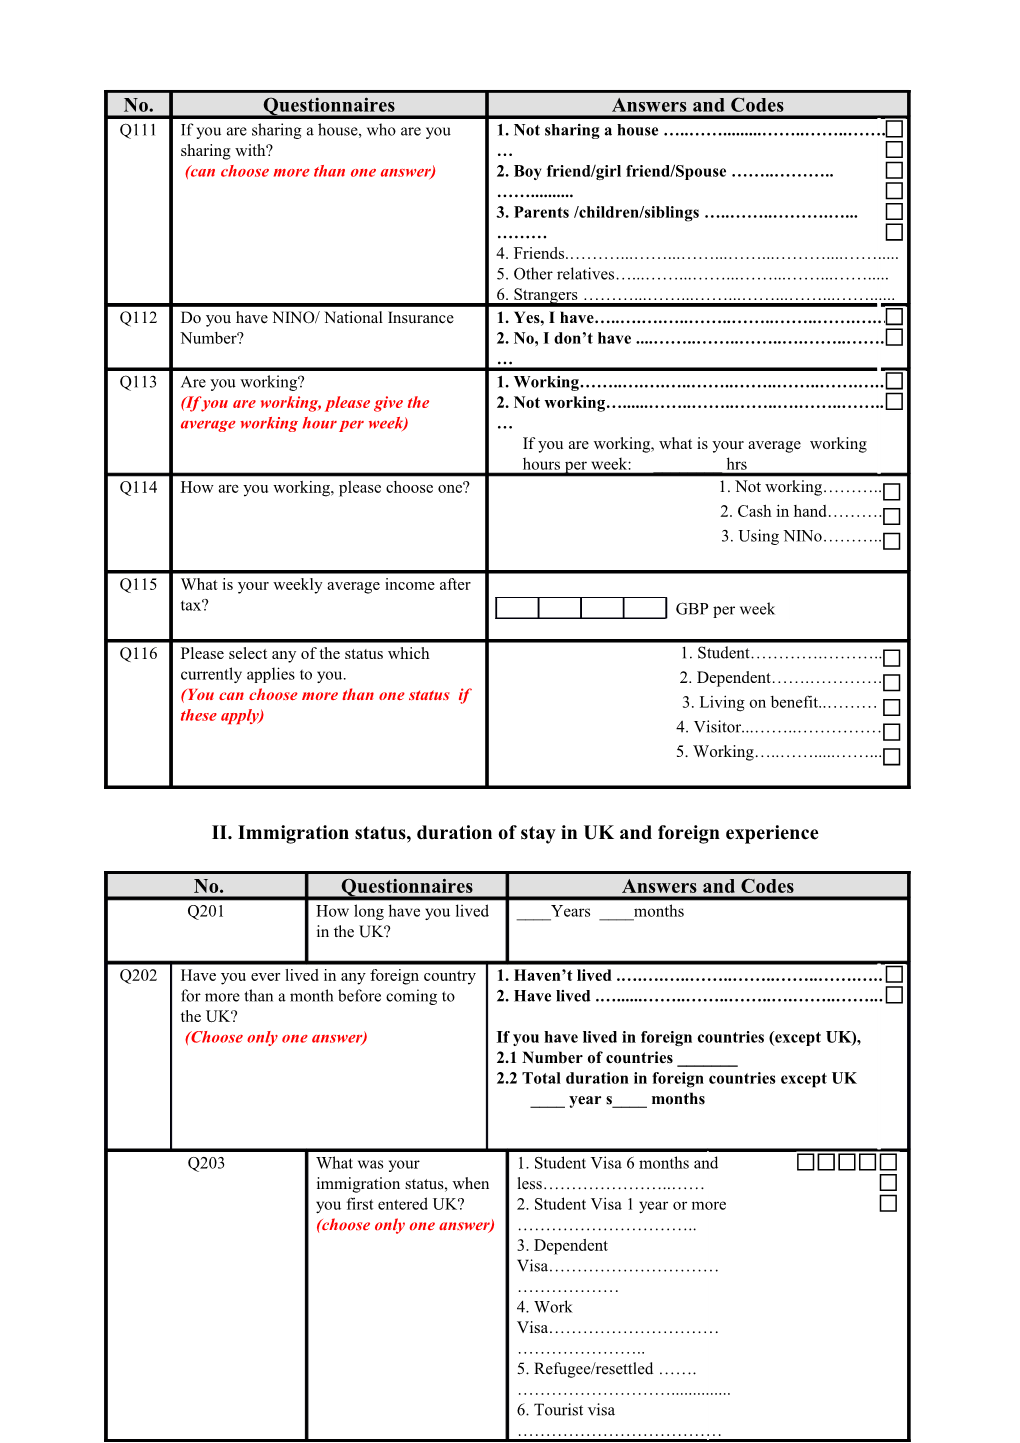 Questionnaire for Quantitative Survey